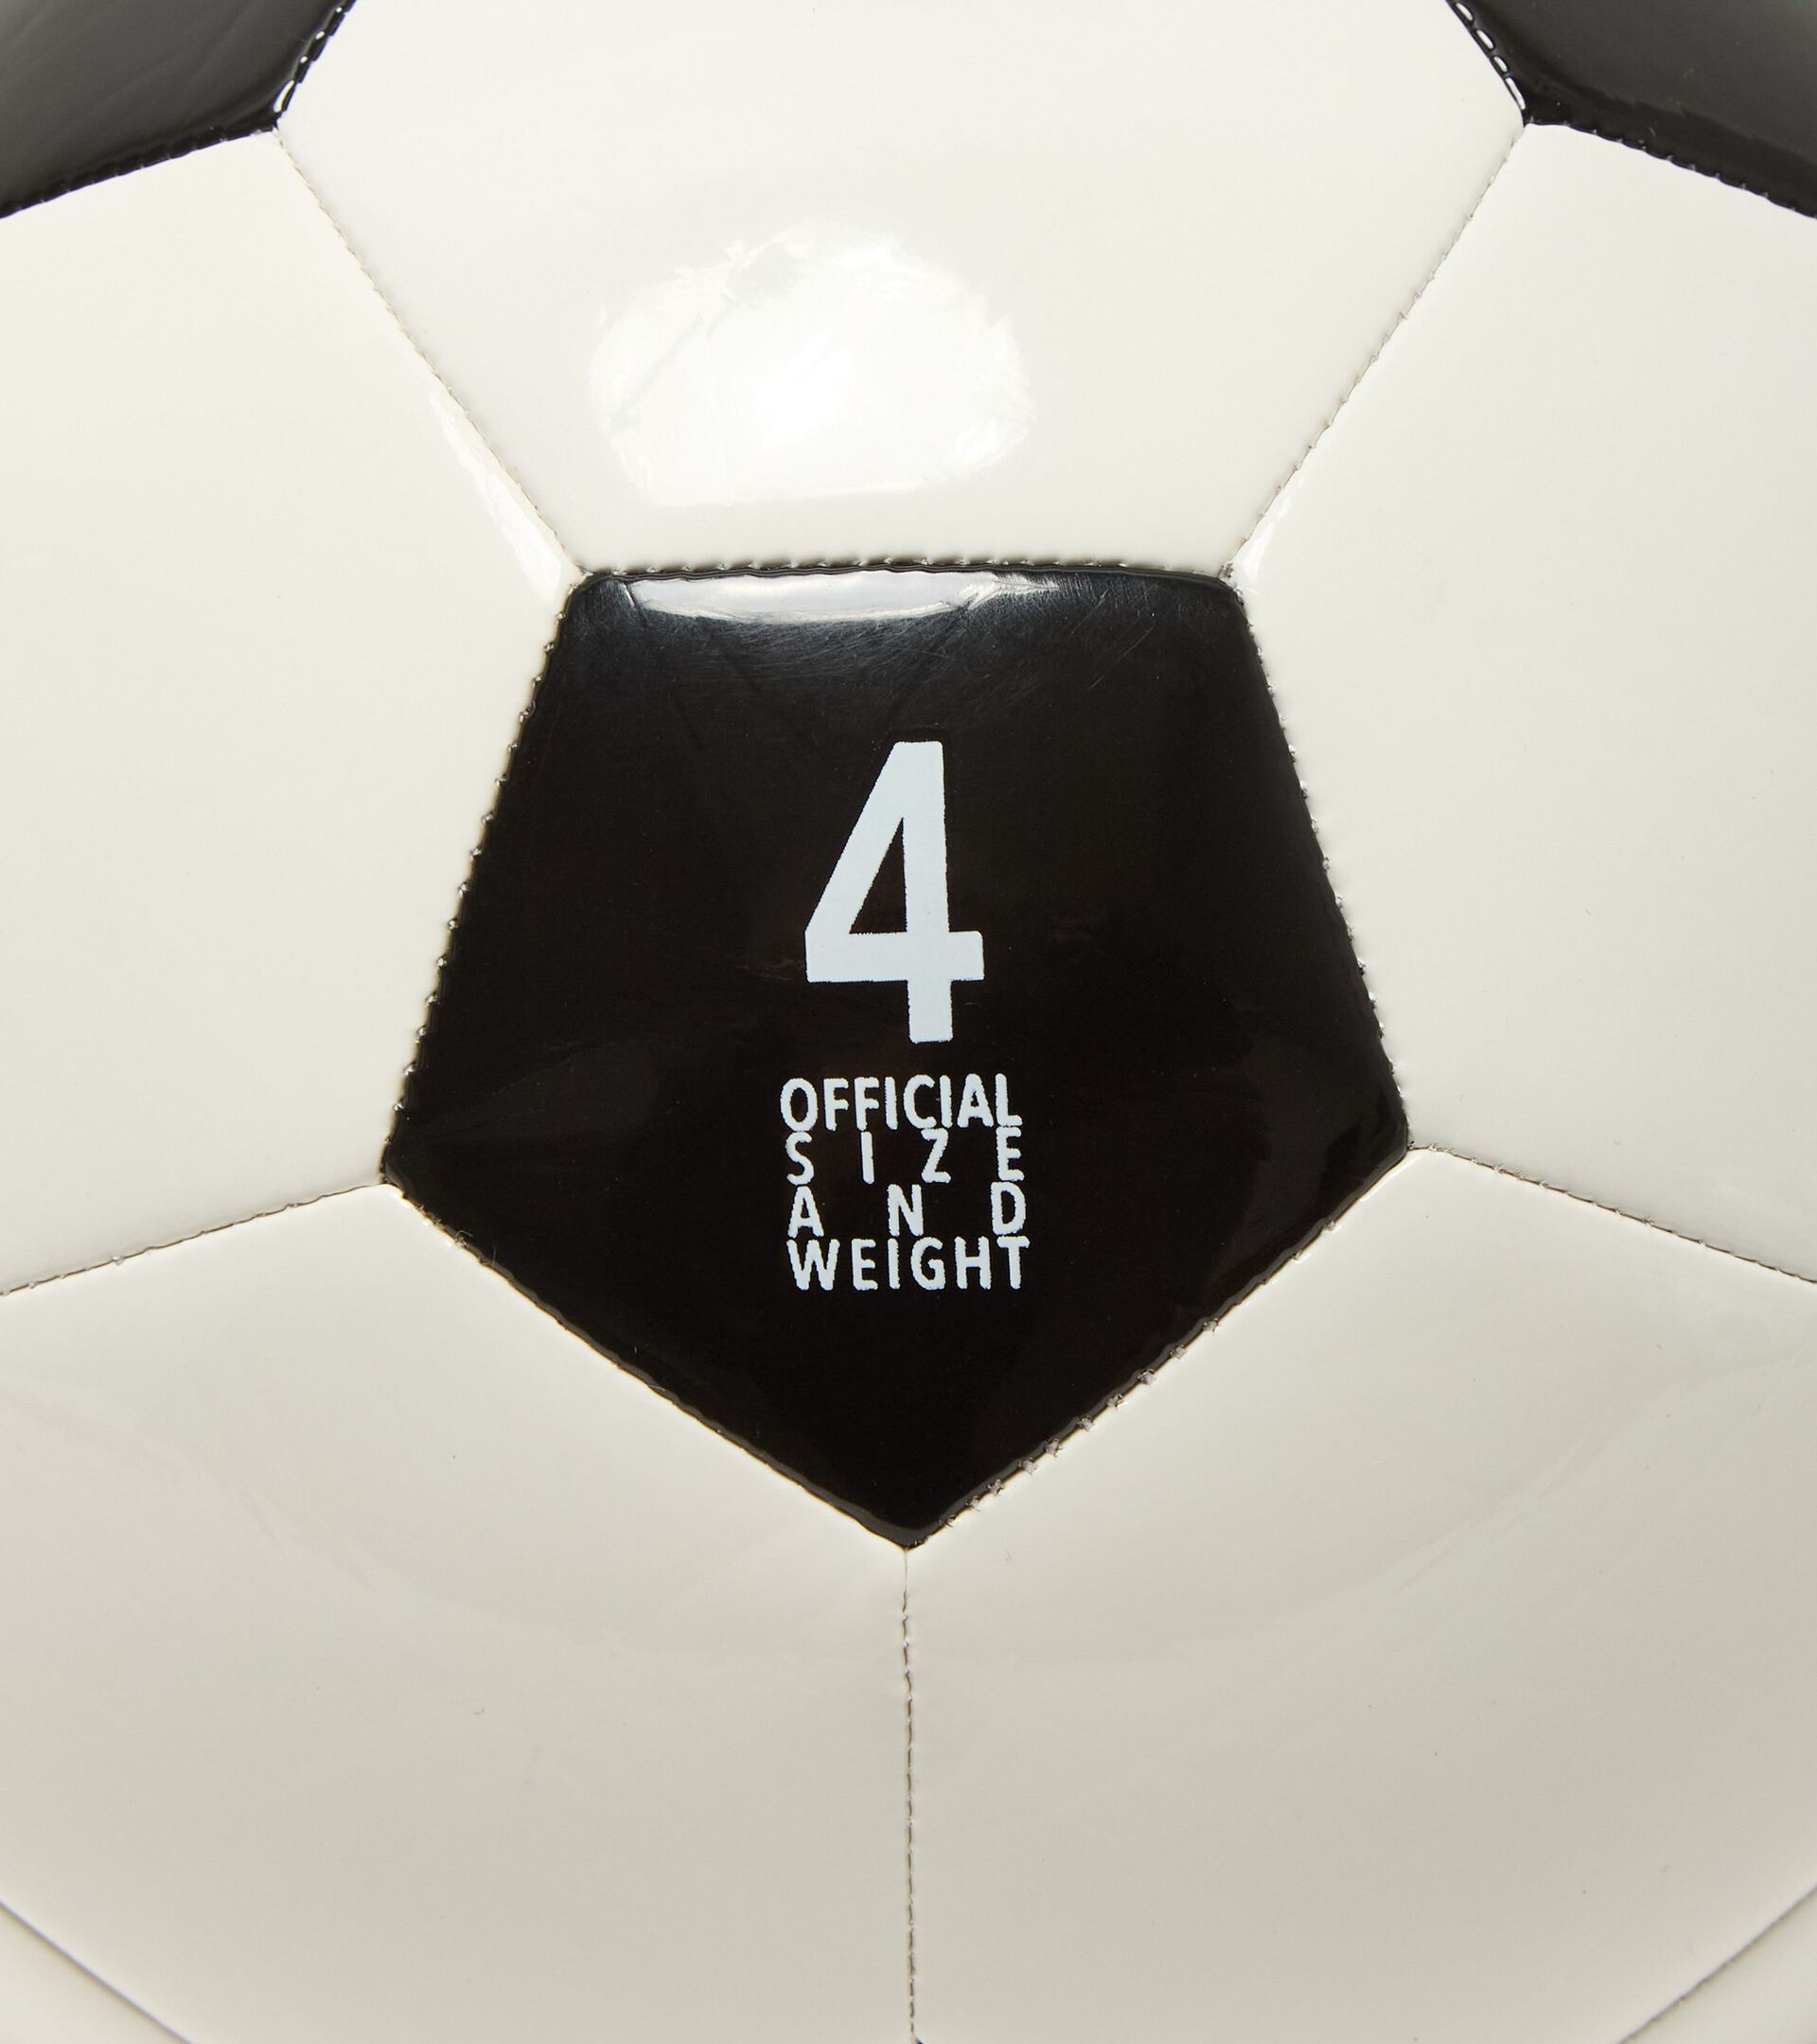 Pallone da calcio - taglia 4 SQUADRA 4 BIANCO OTTICO/NERO - Diadora